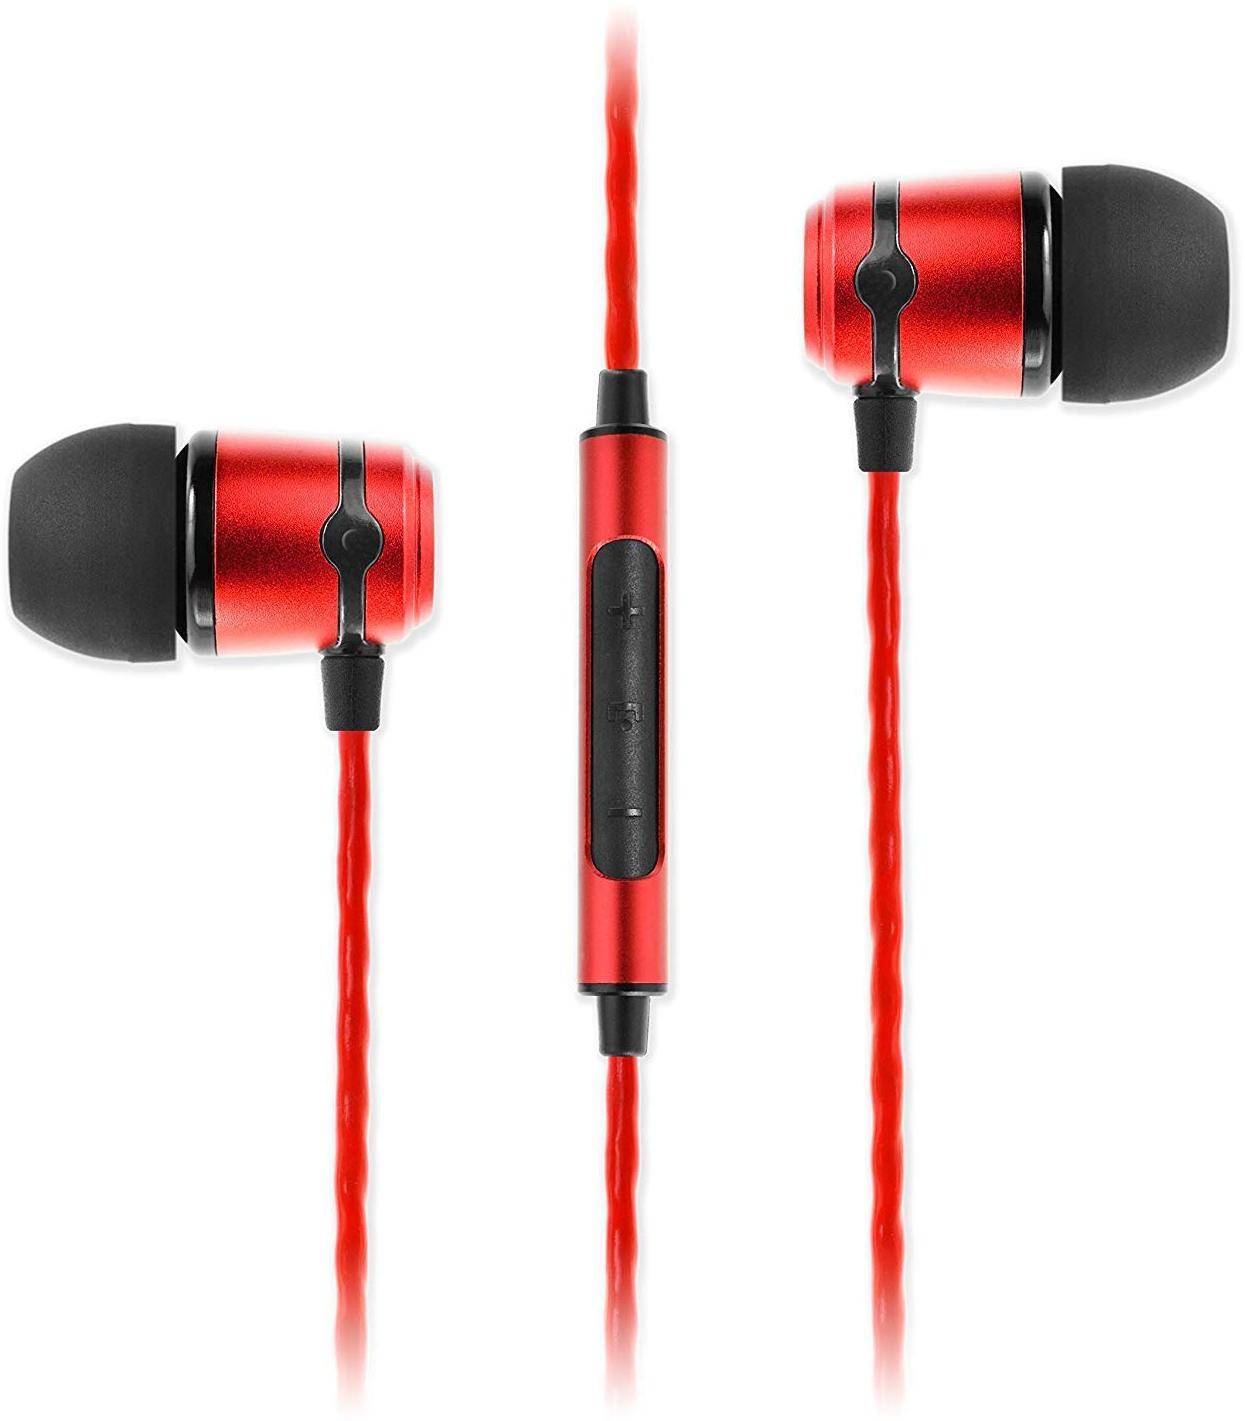 SoundMagic E50C Headphones With Mic zoom image